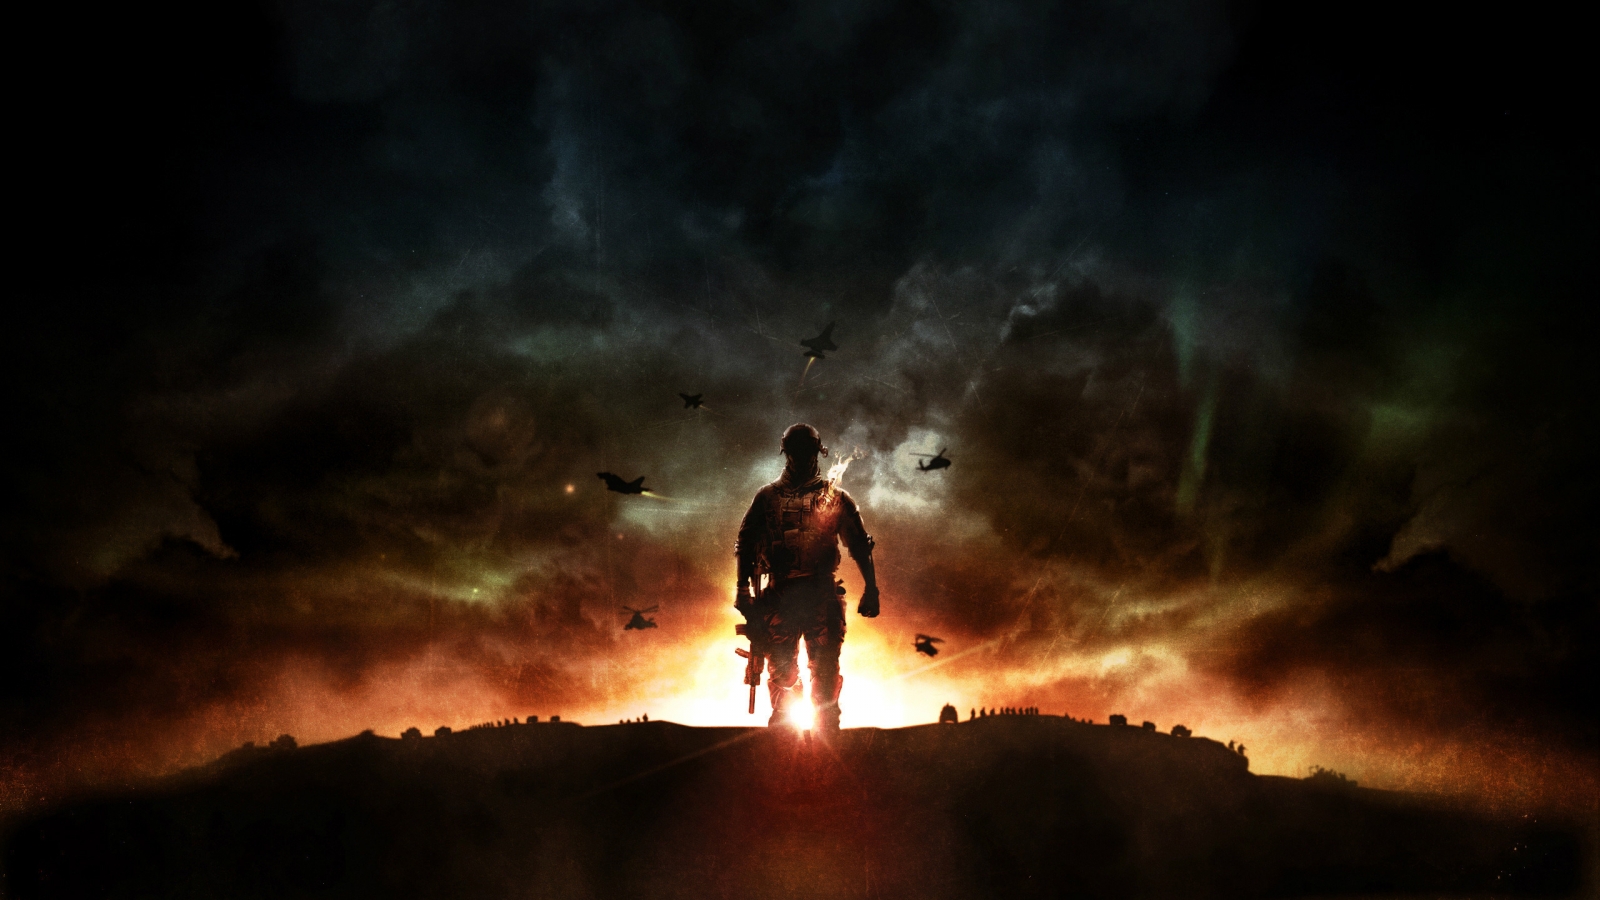 Battlefield 4 Sunset War for 1600 x 900 HDTV resolution